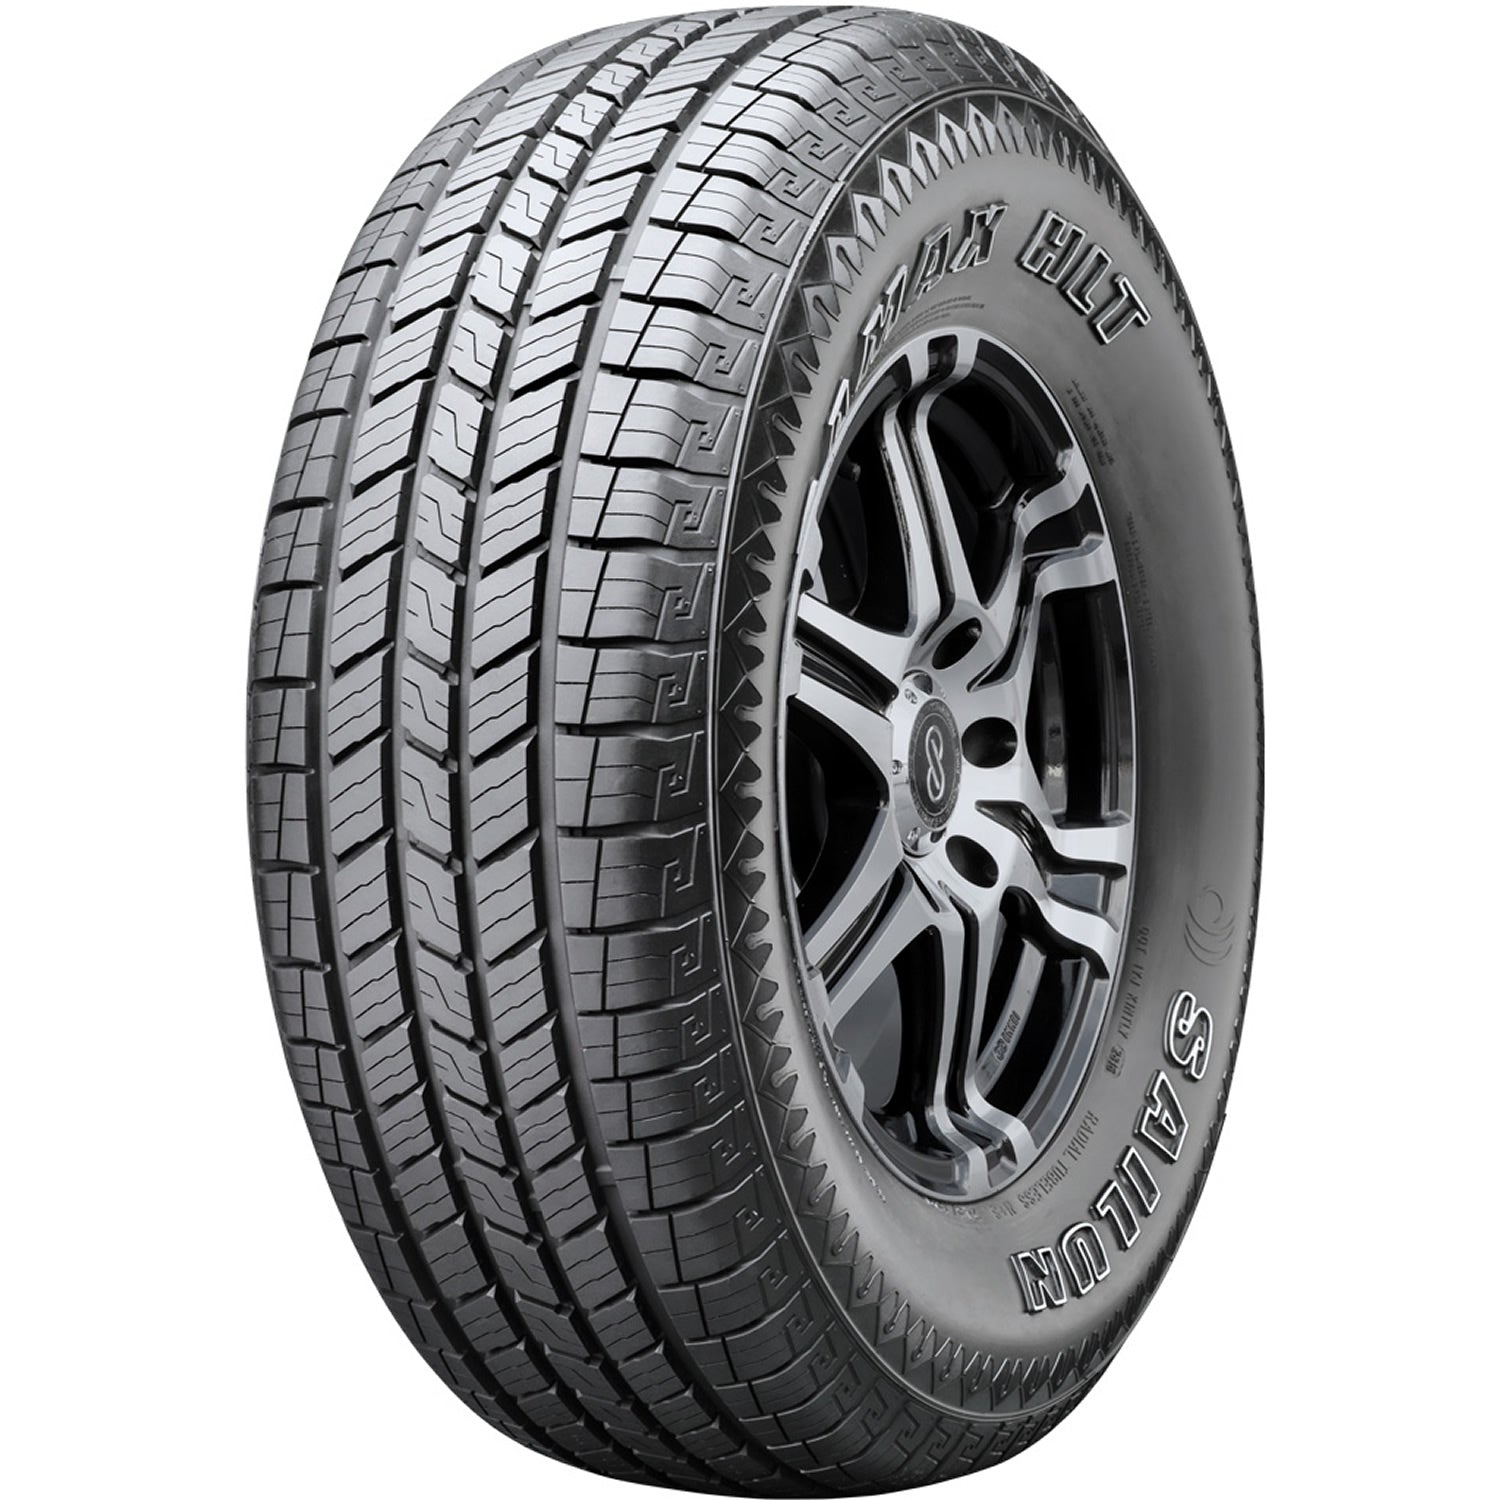 SAILUN TERRAMAX HLT LT245/75R16 (30.5X9.8R 16) Tires